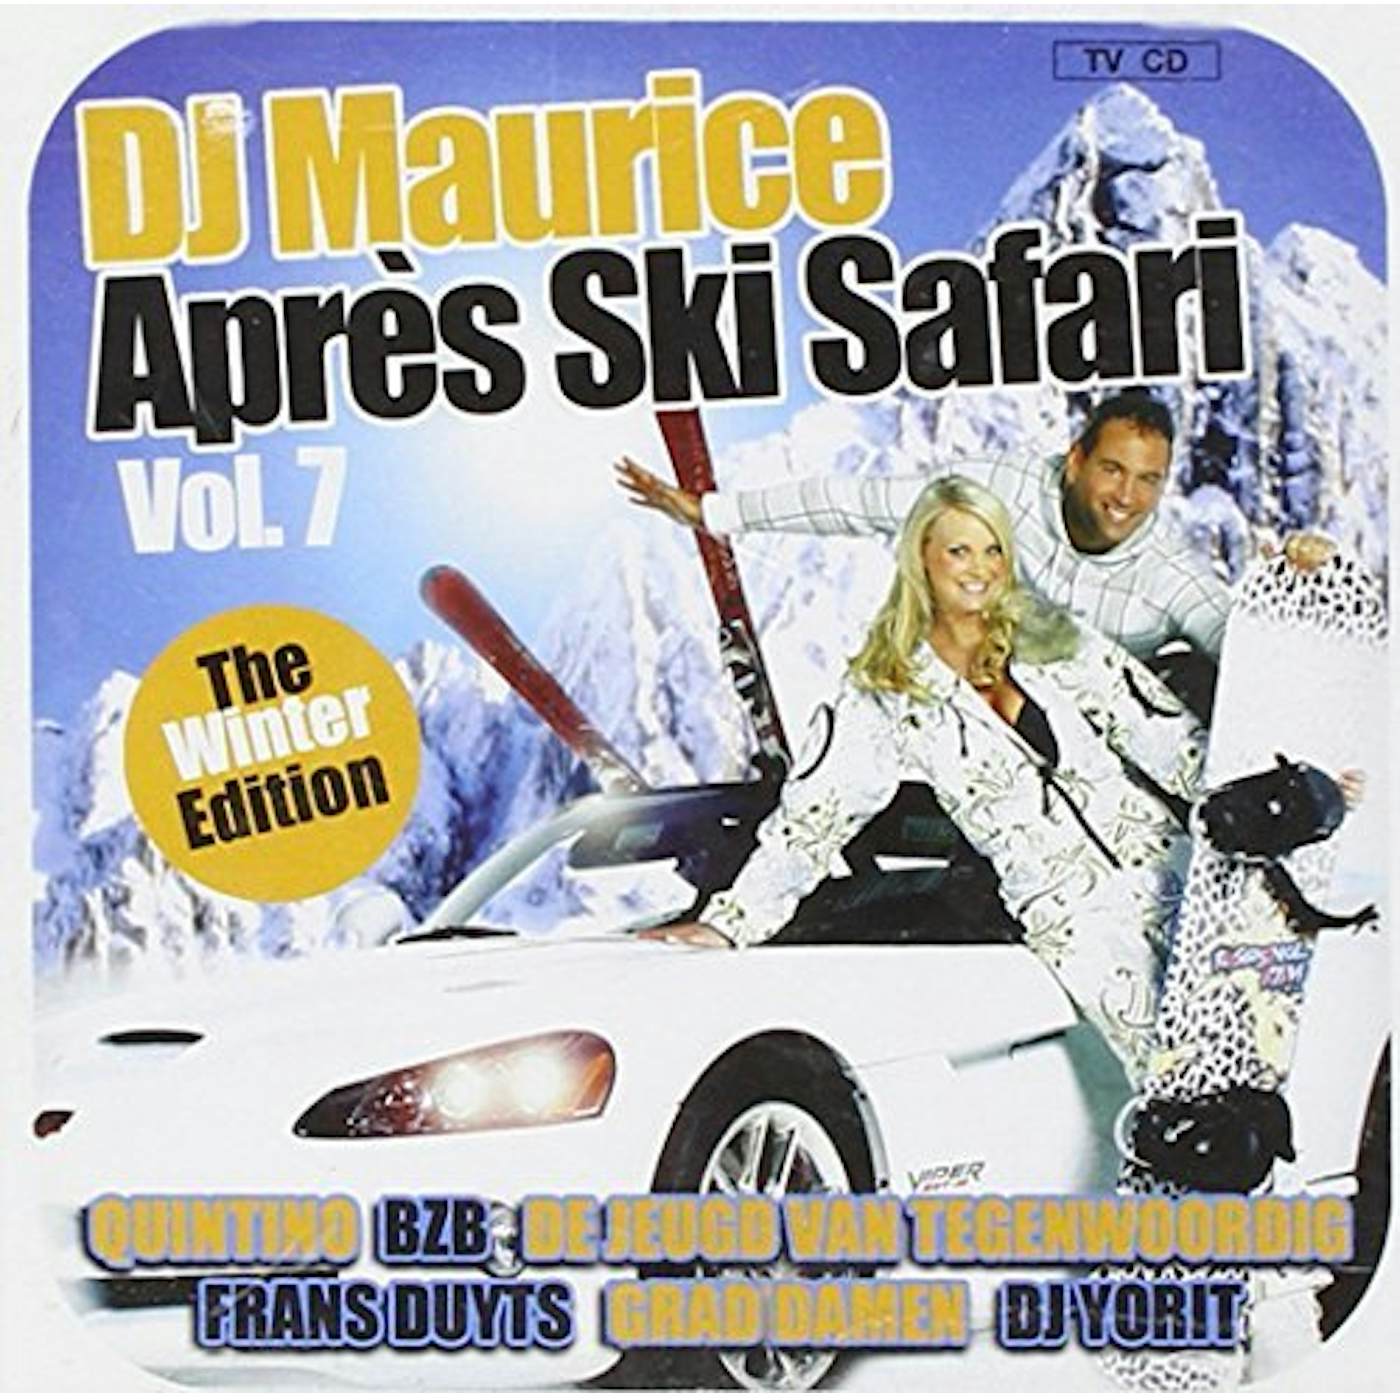 DJ Maurice APRES SKI SAFARI 7 CD